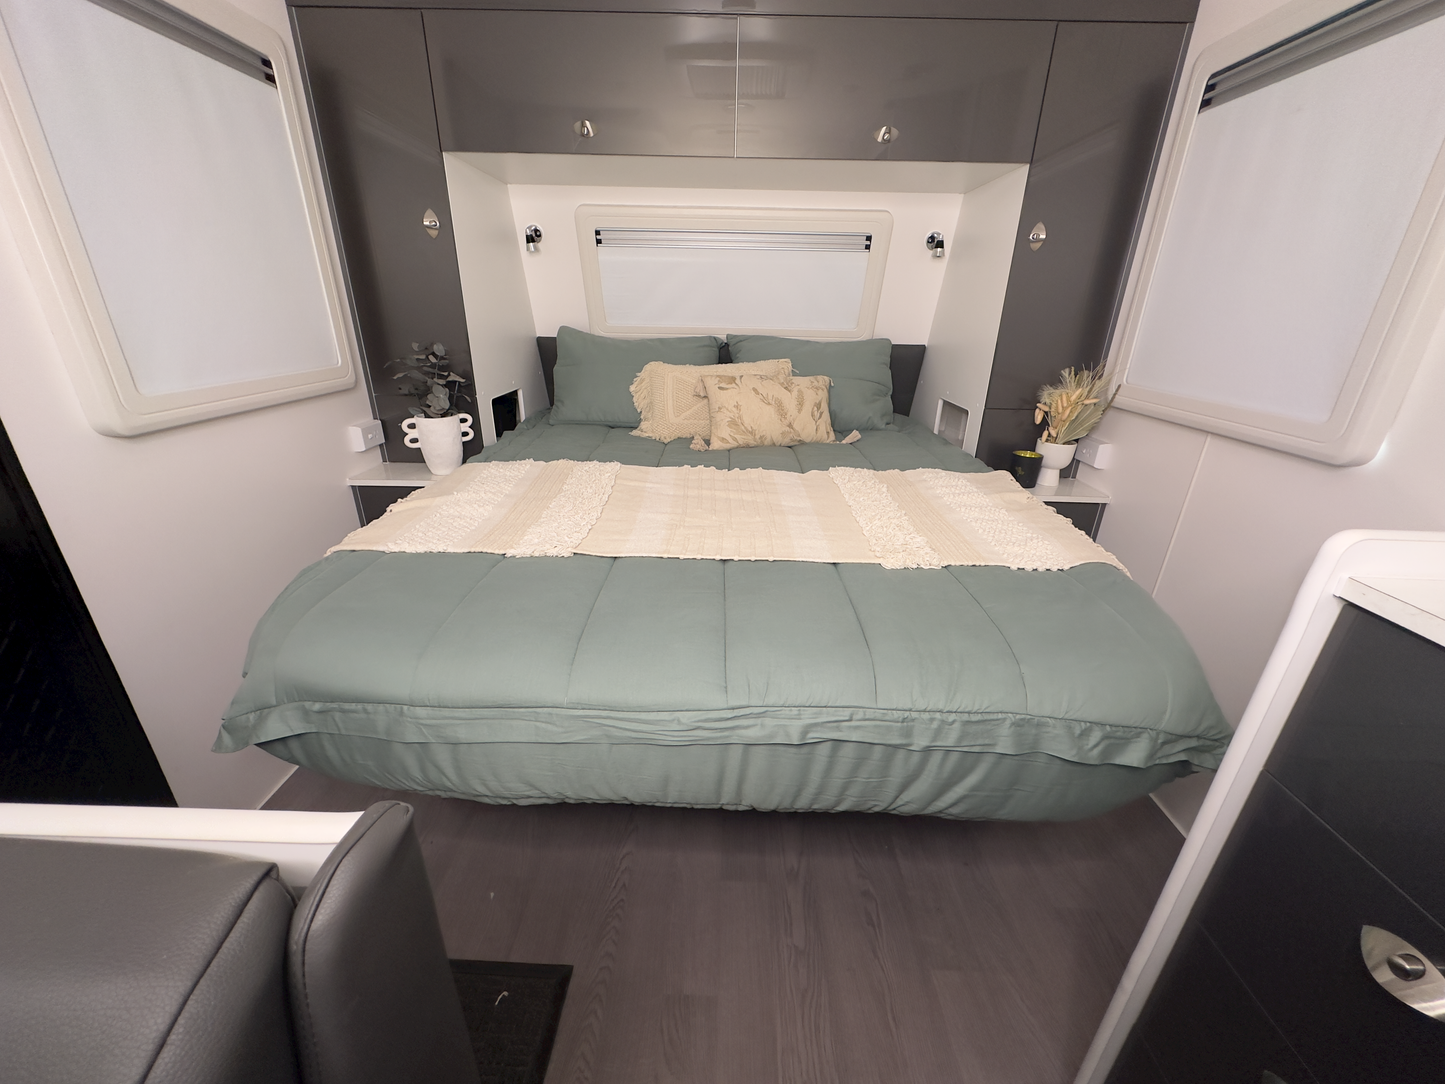 Sage Caravan Complete Bedding Set - Queen